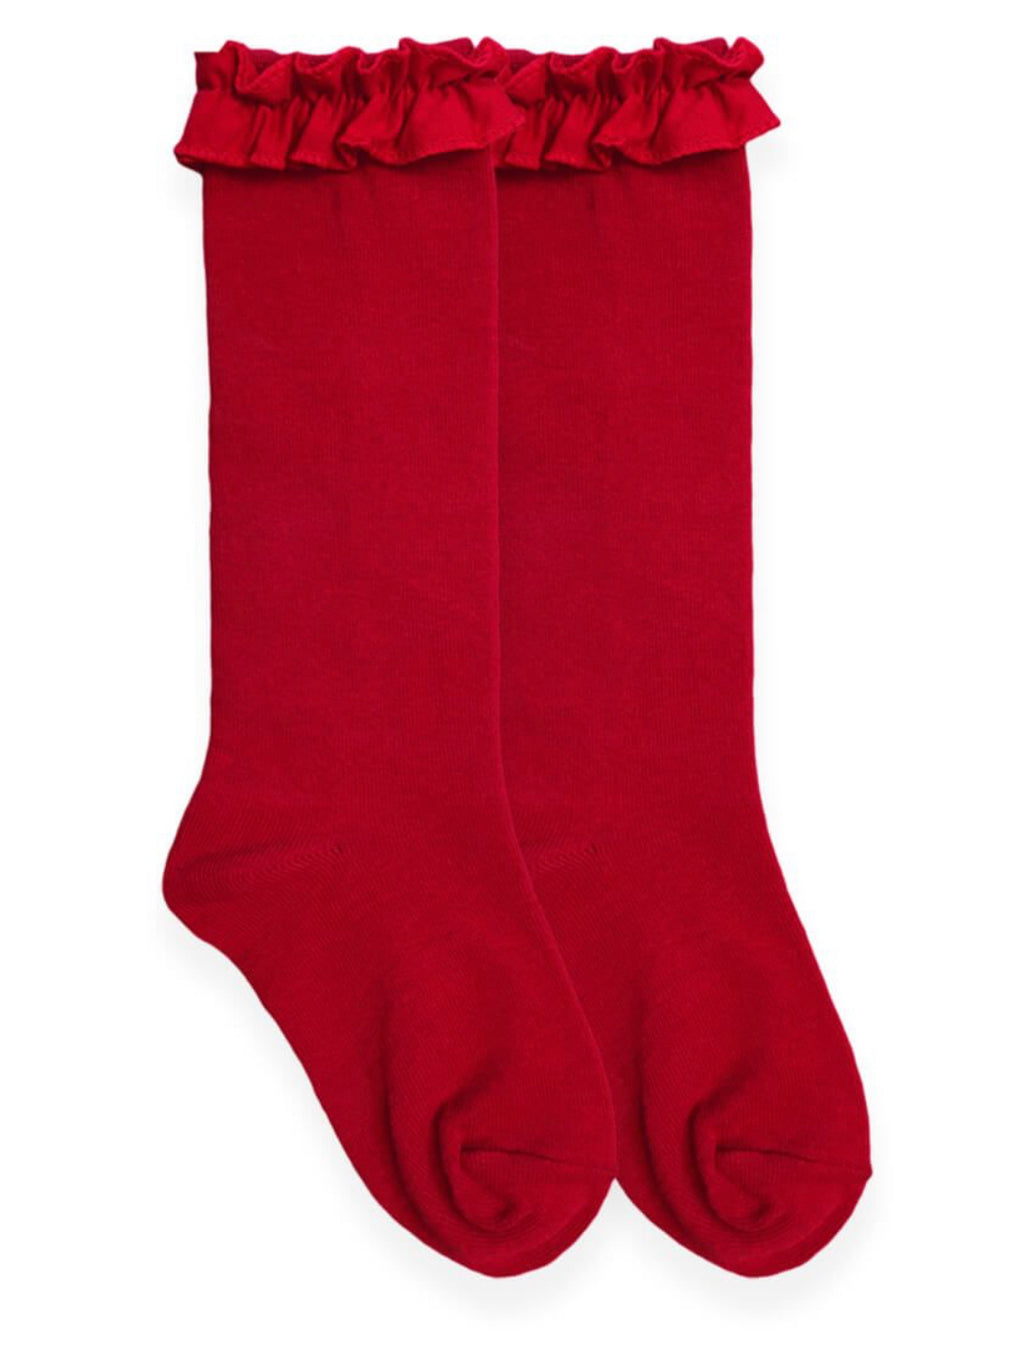 Misty Ruffle Turn Cuff Socks – Mixit-Matchit